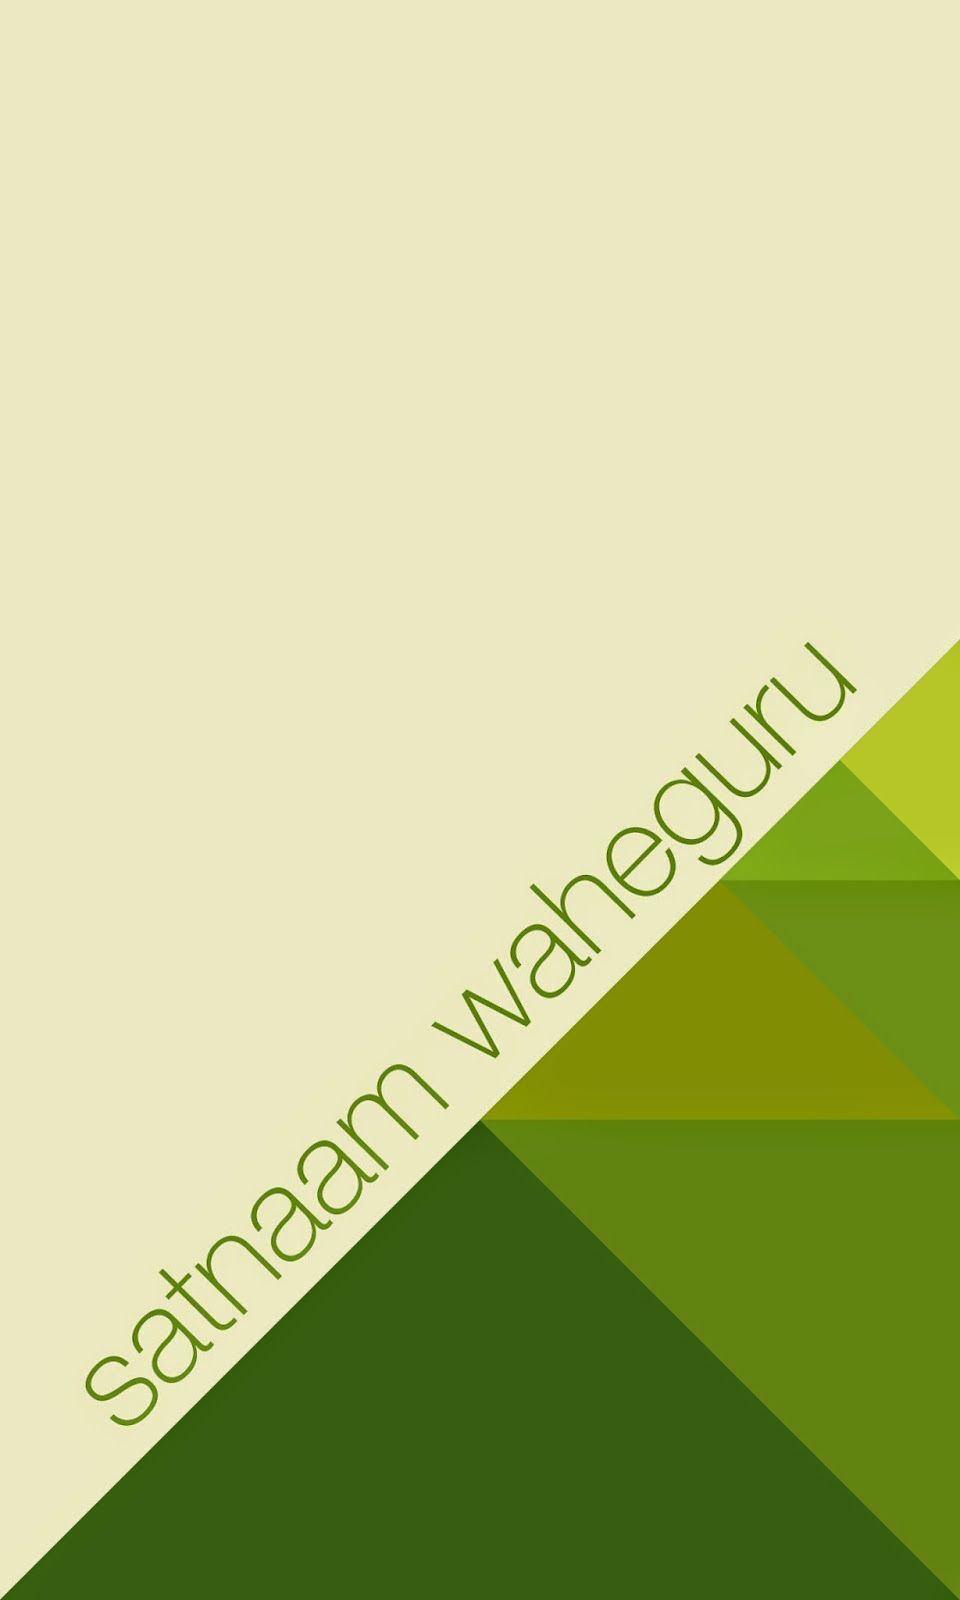 Waheguru Wallpaper For Mobile - Graphic Design - HD Wallpaper 